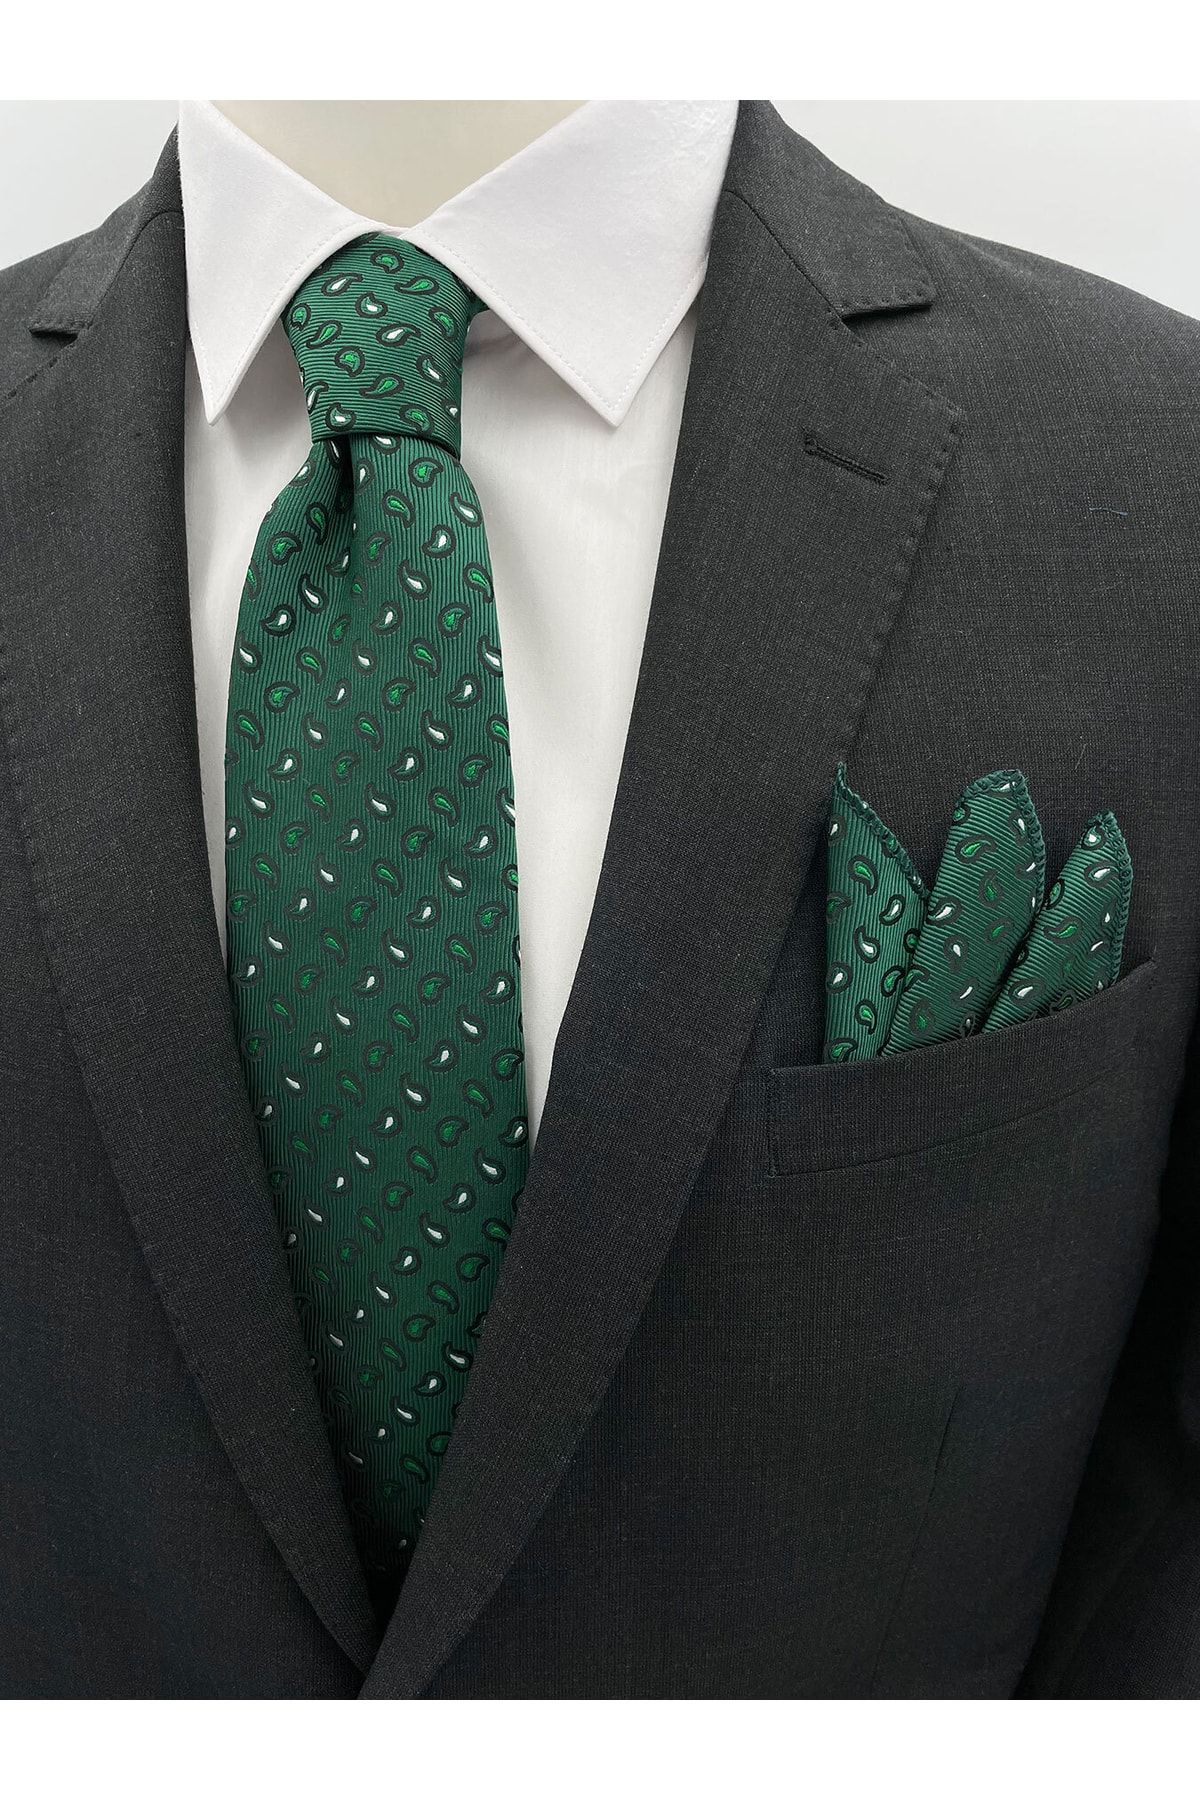 Brianze Yeşil Küçük Şal Desen Kravat Mendil Set